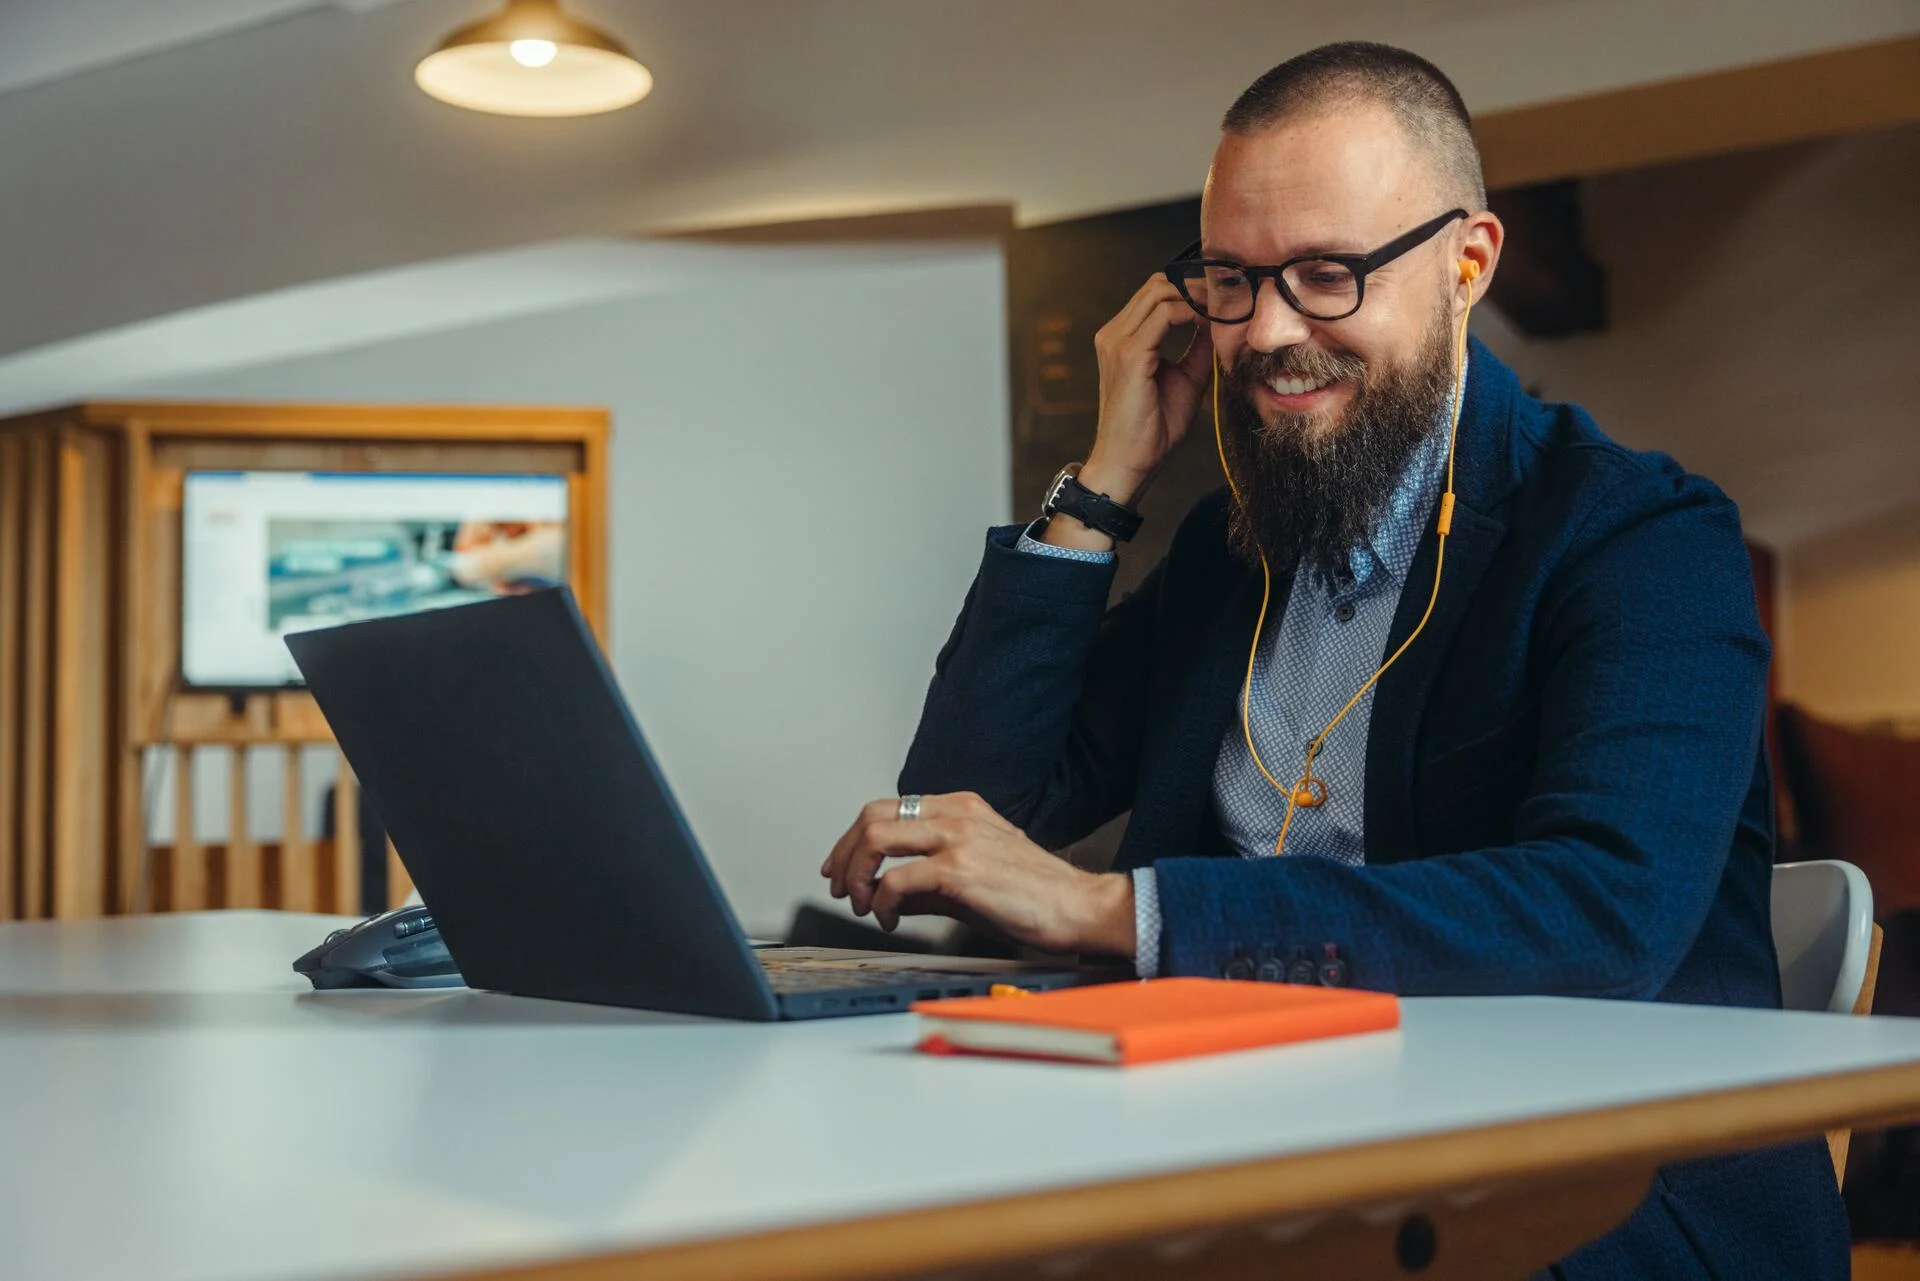 Un uomo con barba e occhiali partecipa a una telefonata in un ufficio davanti al suo computer portatile.